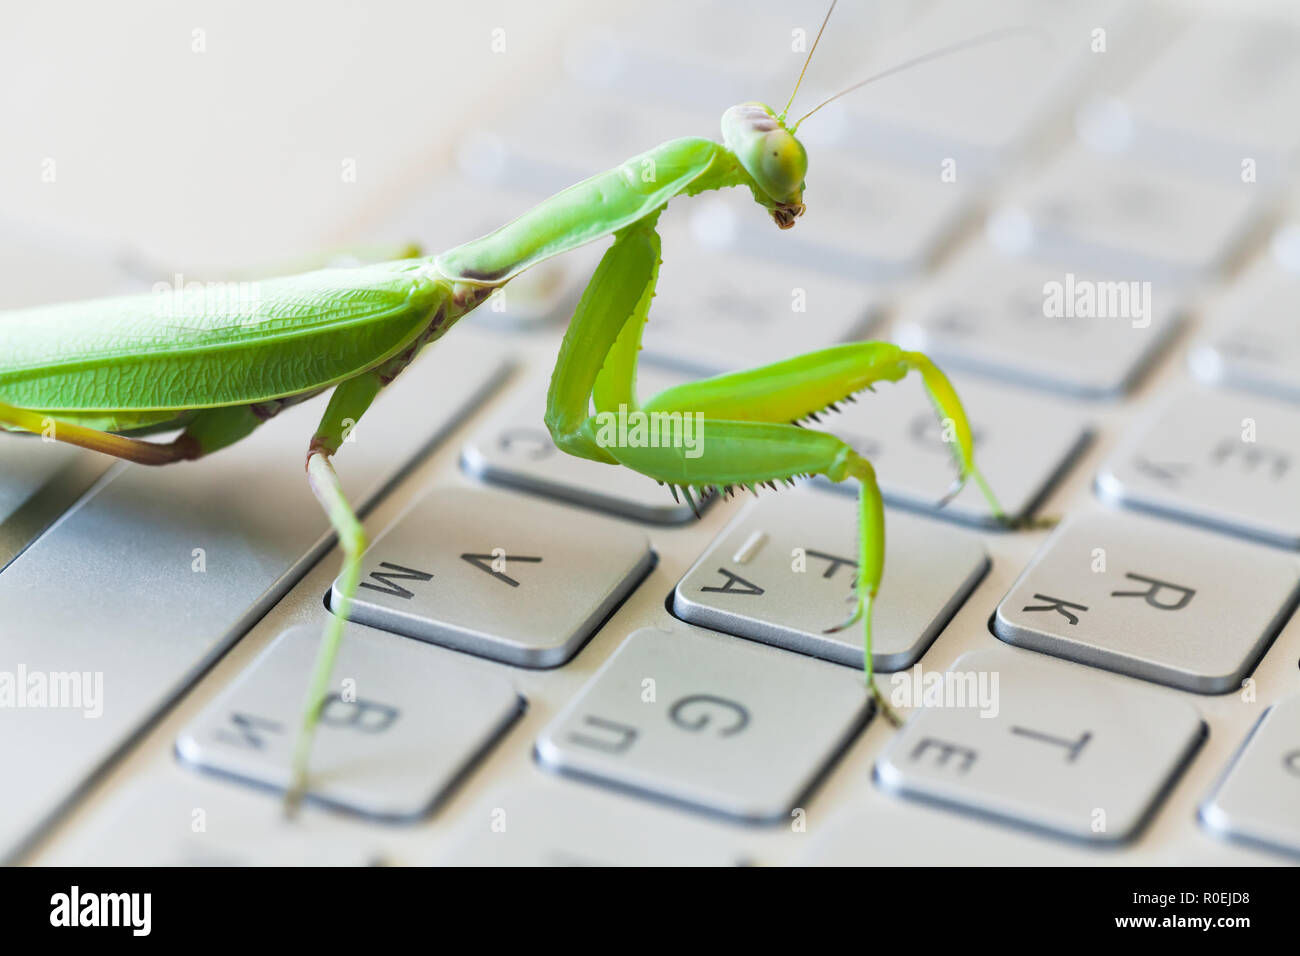 Insetto verde premendo i tasti su una tastiera portatile, mantide religiosa come un computer bug o metafora di hacker Foto Stock